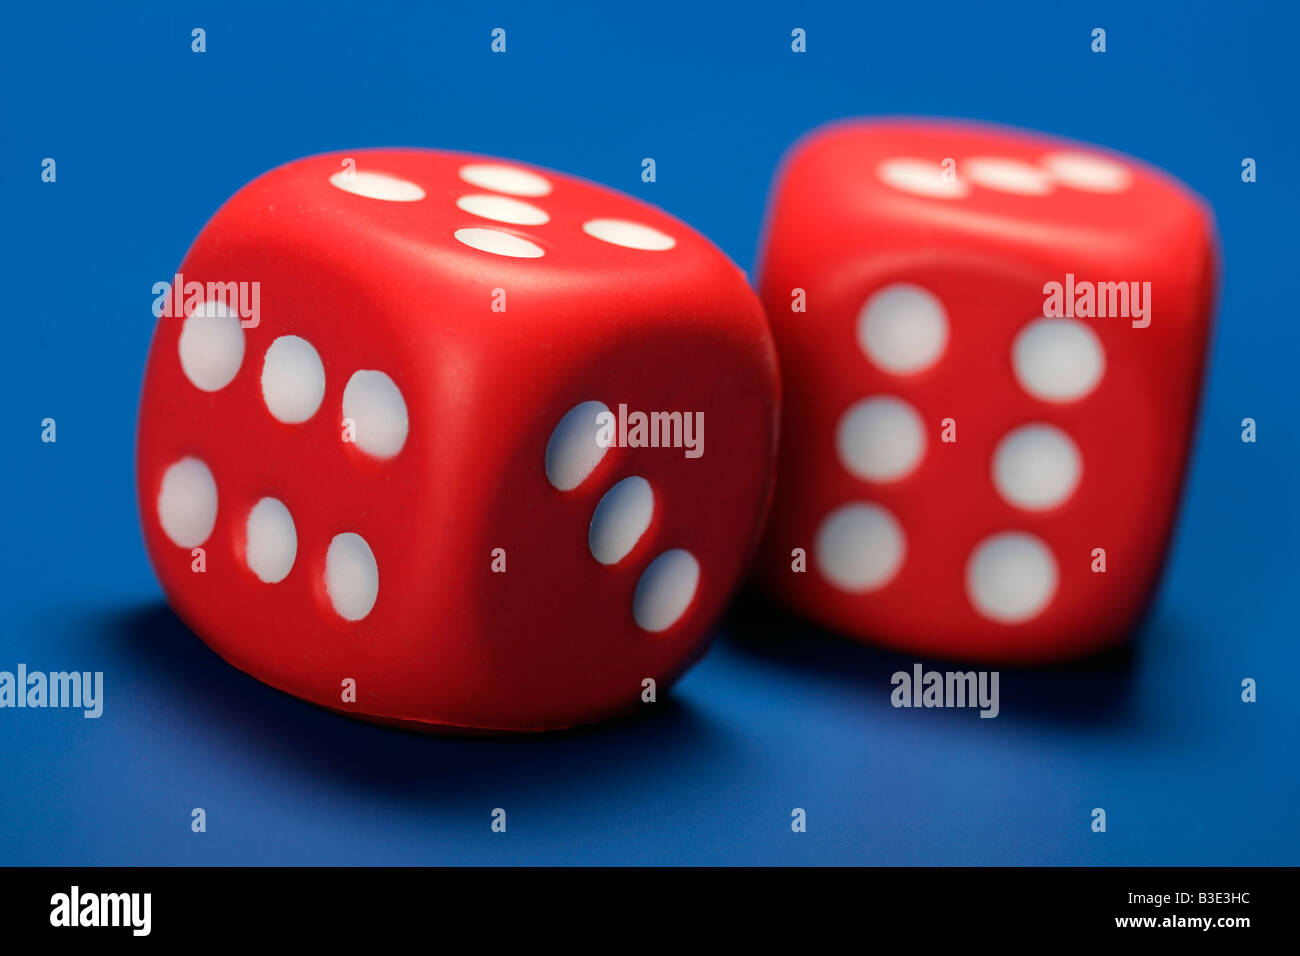 zwei rote Würfel blau Hintergrund spielen Glücksspiel Wette Casino  Spielball Versprechen sucht leicht verdientes Geld Stockfotografie - Alamy